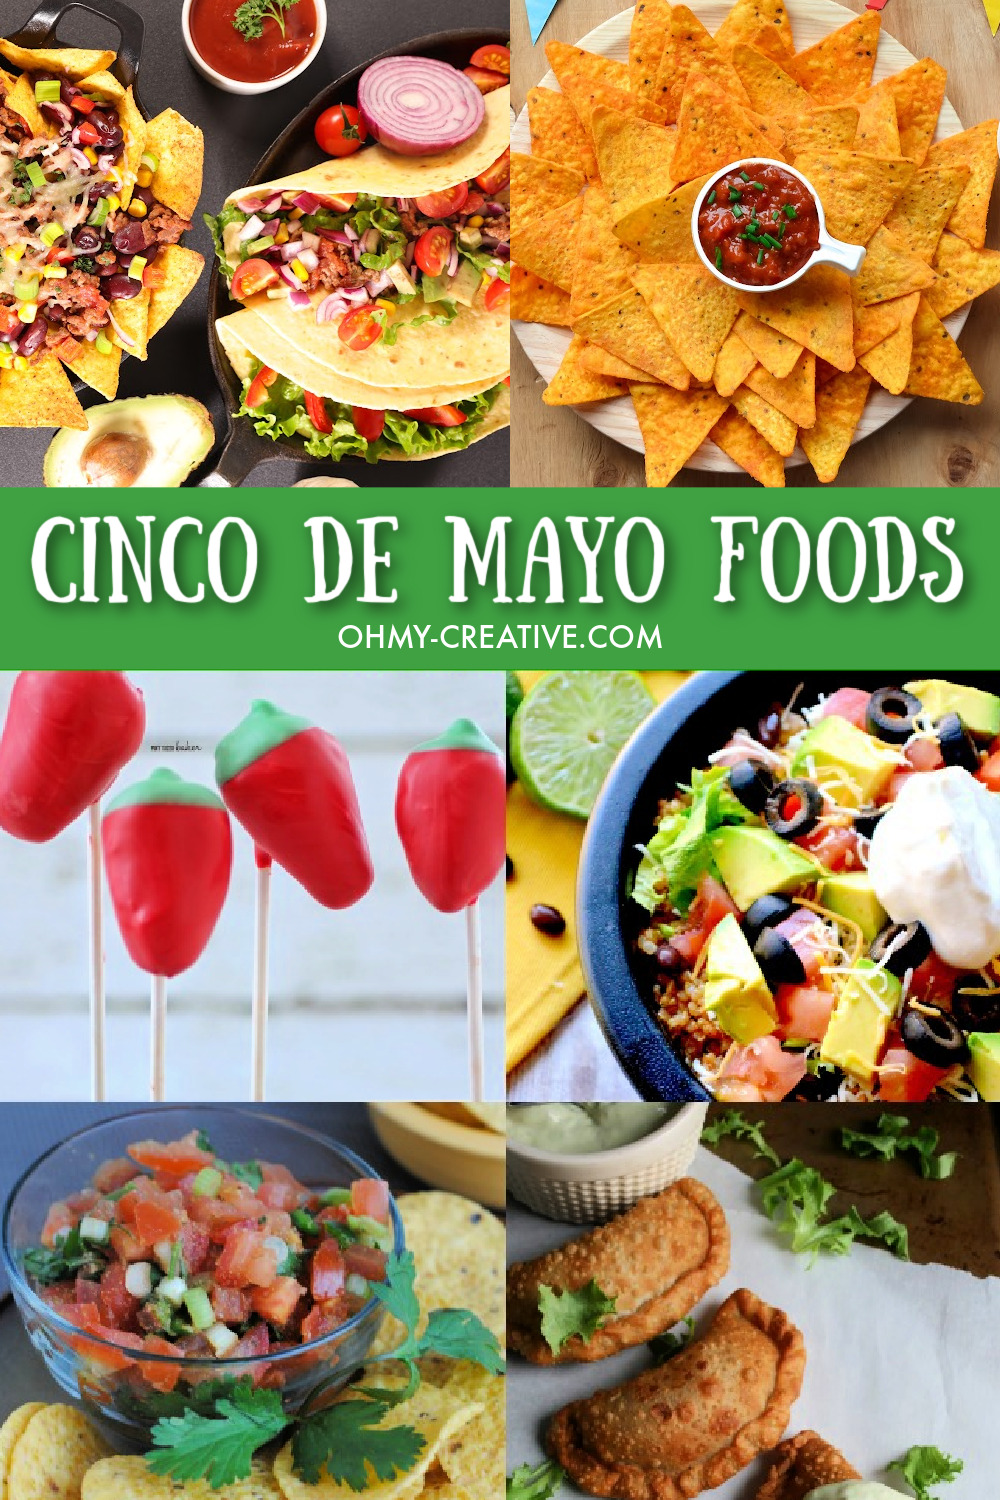 A collage of Cinco de Mayo foods including tacos, salsa, nachos and dessert.